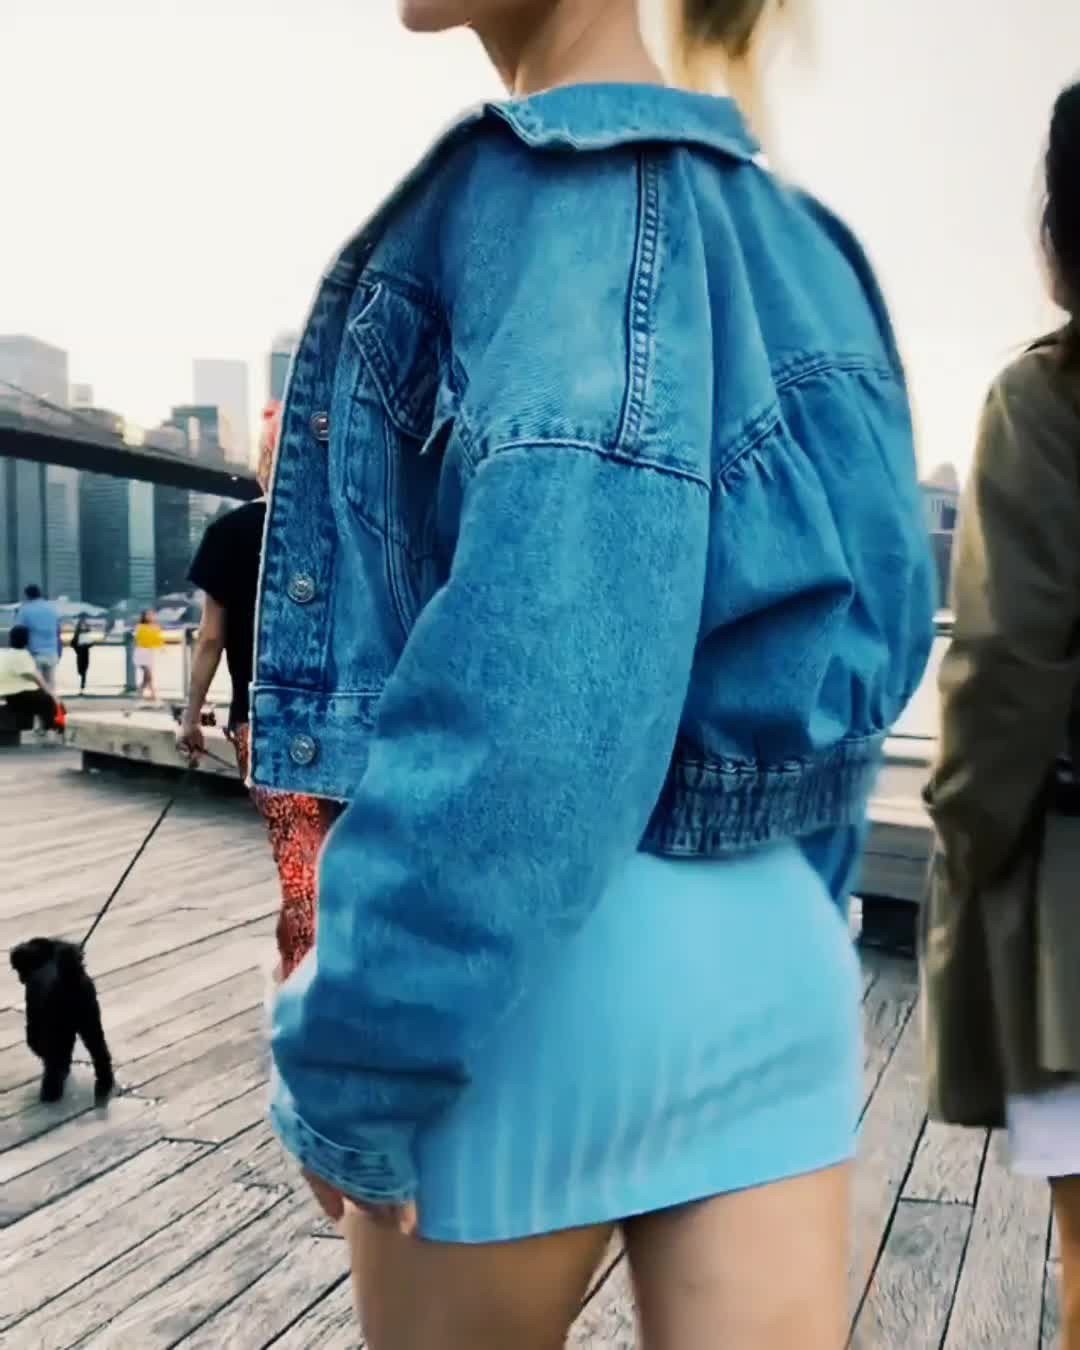 Blue girl ass